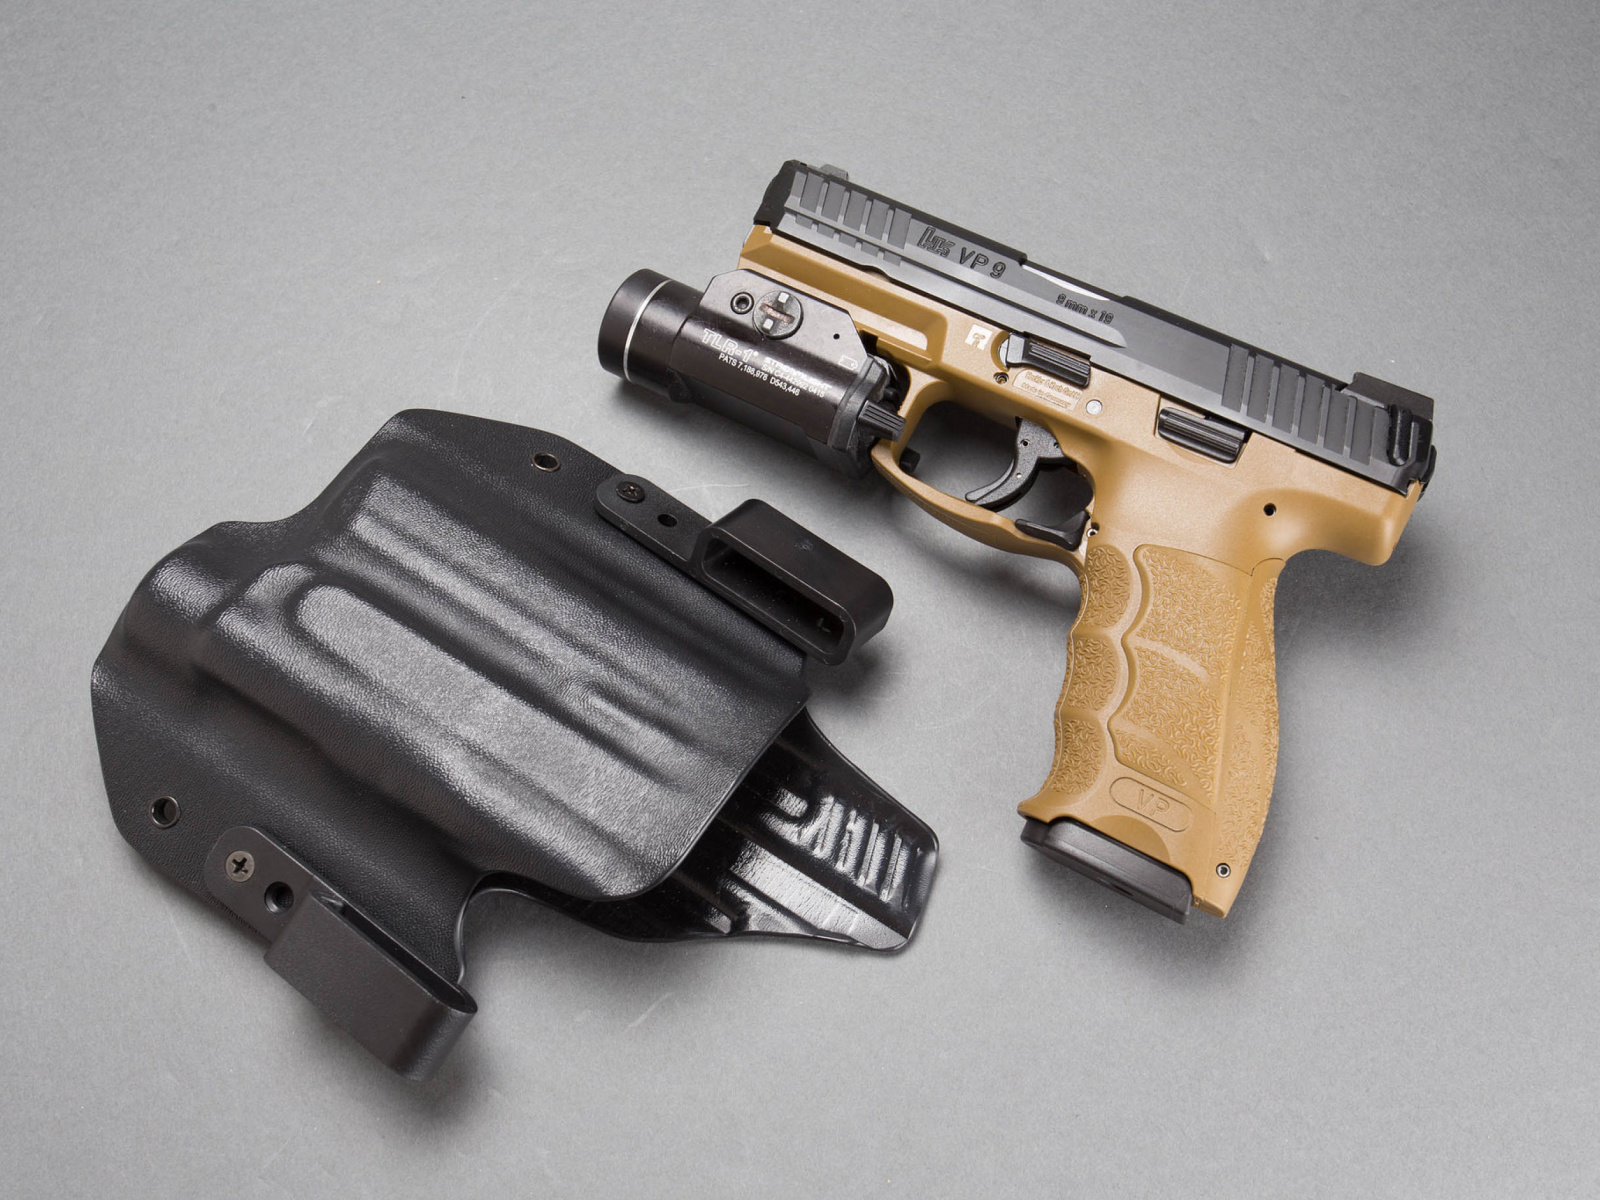 Pistols Heckler & Koch 9mm wallpaper 1600x1200